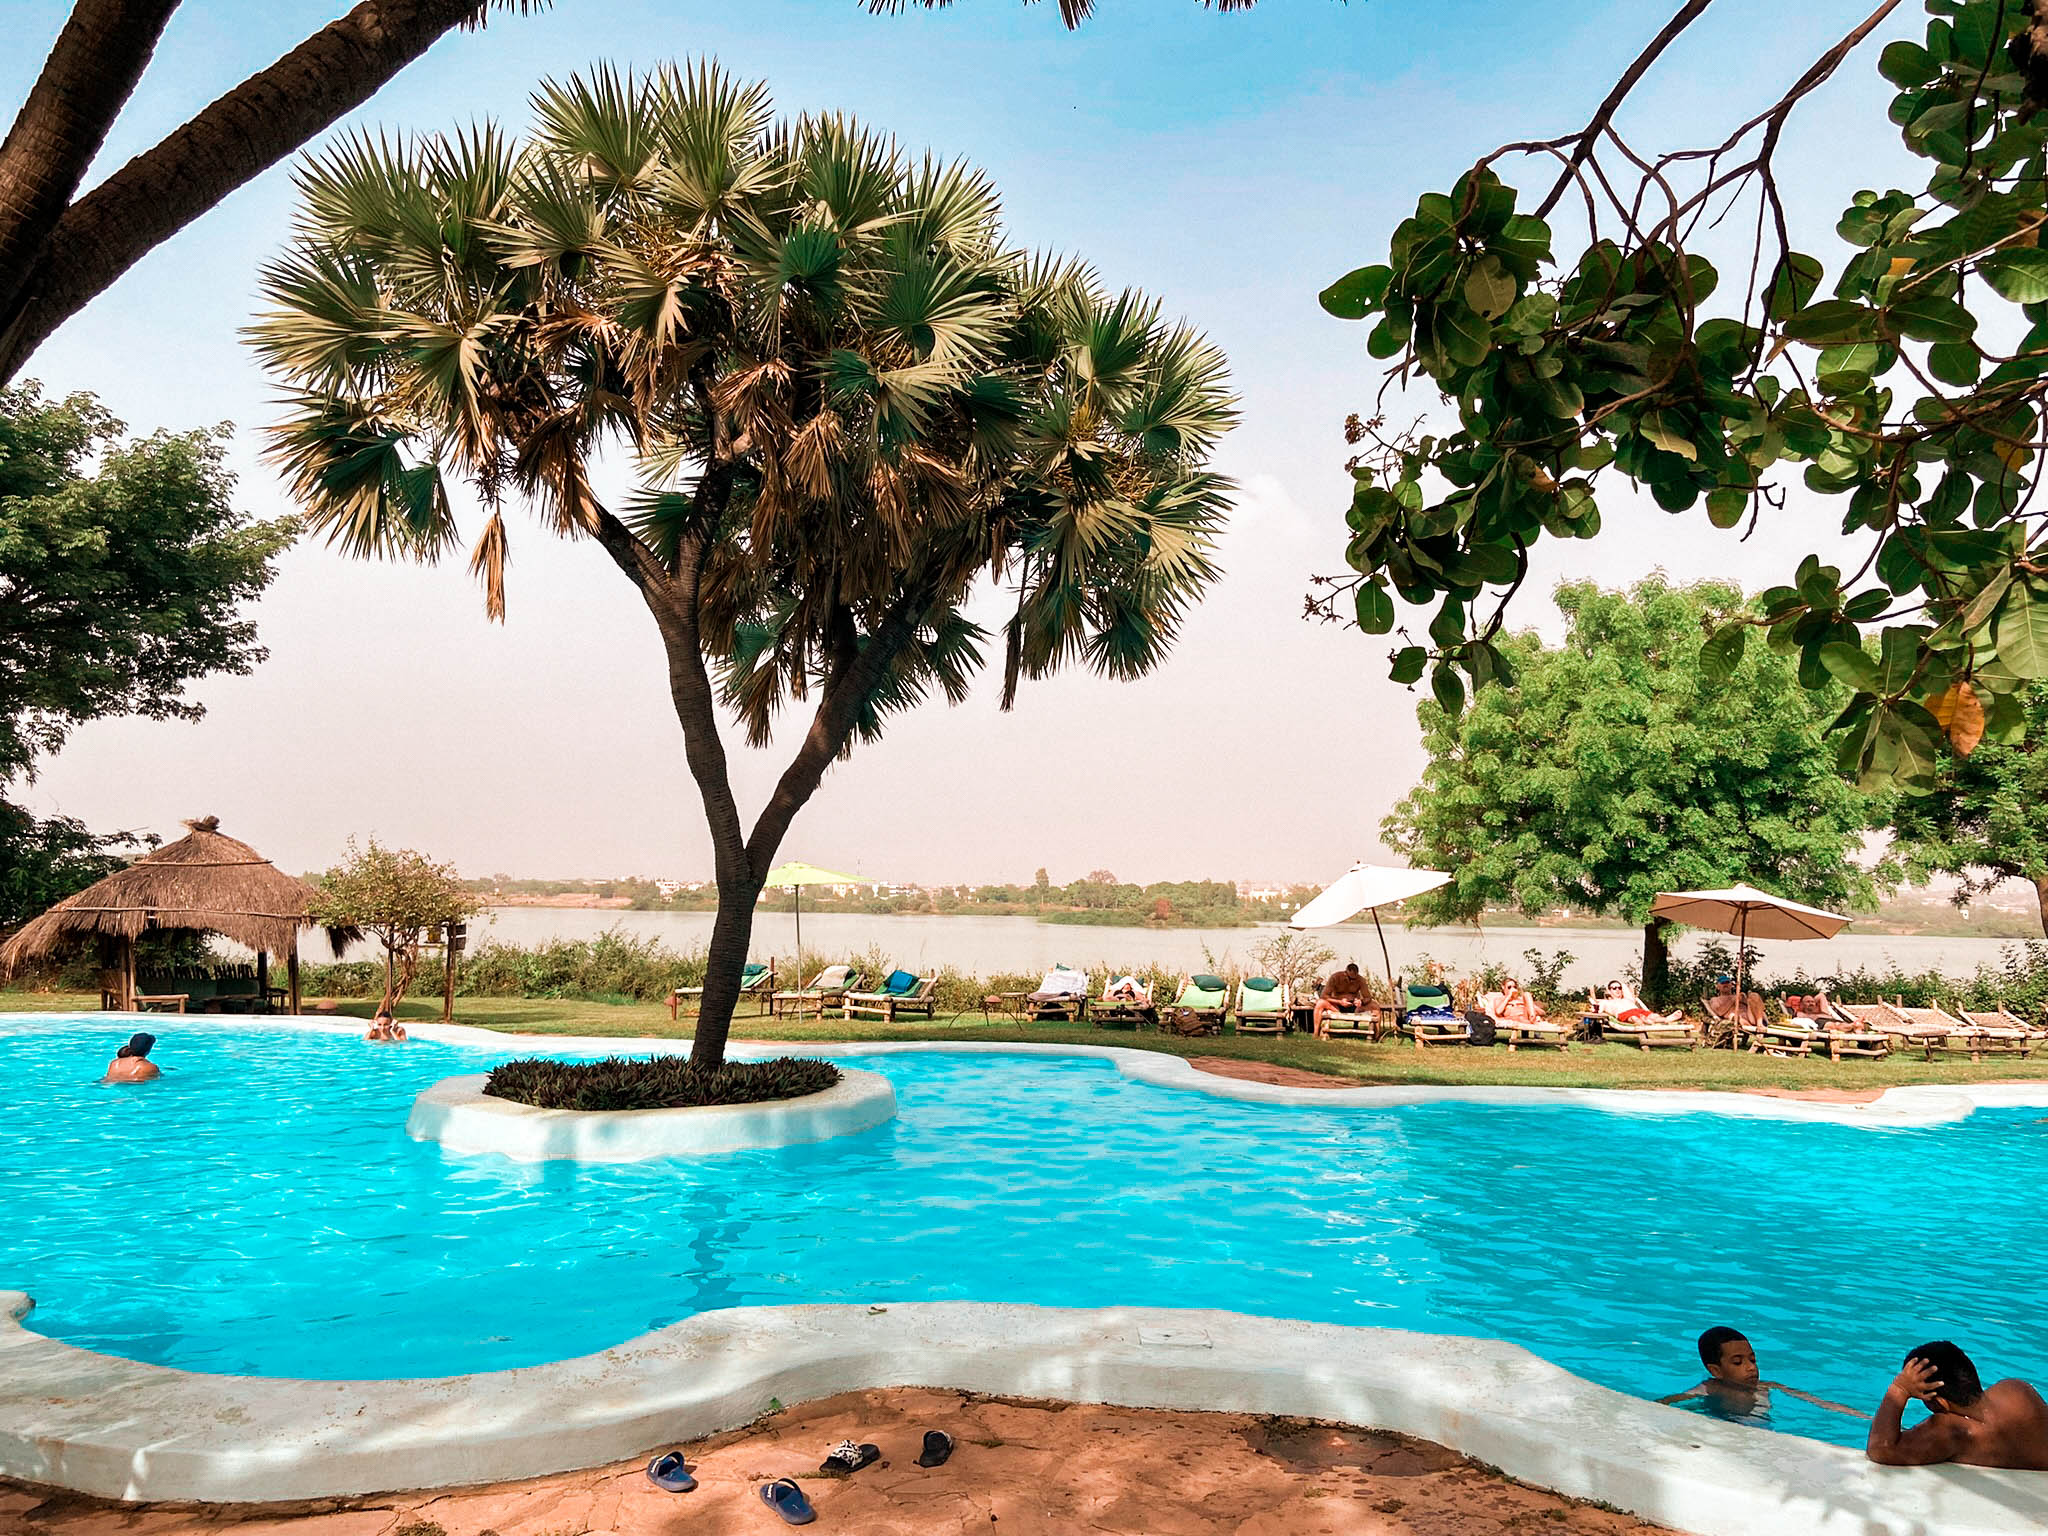 Badalodge Bamako : Piscine avec vue sur le fleuve, Restaurant, hôtel. Visiter Bamako, que faire?